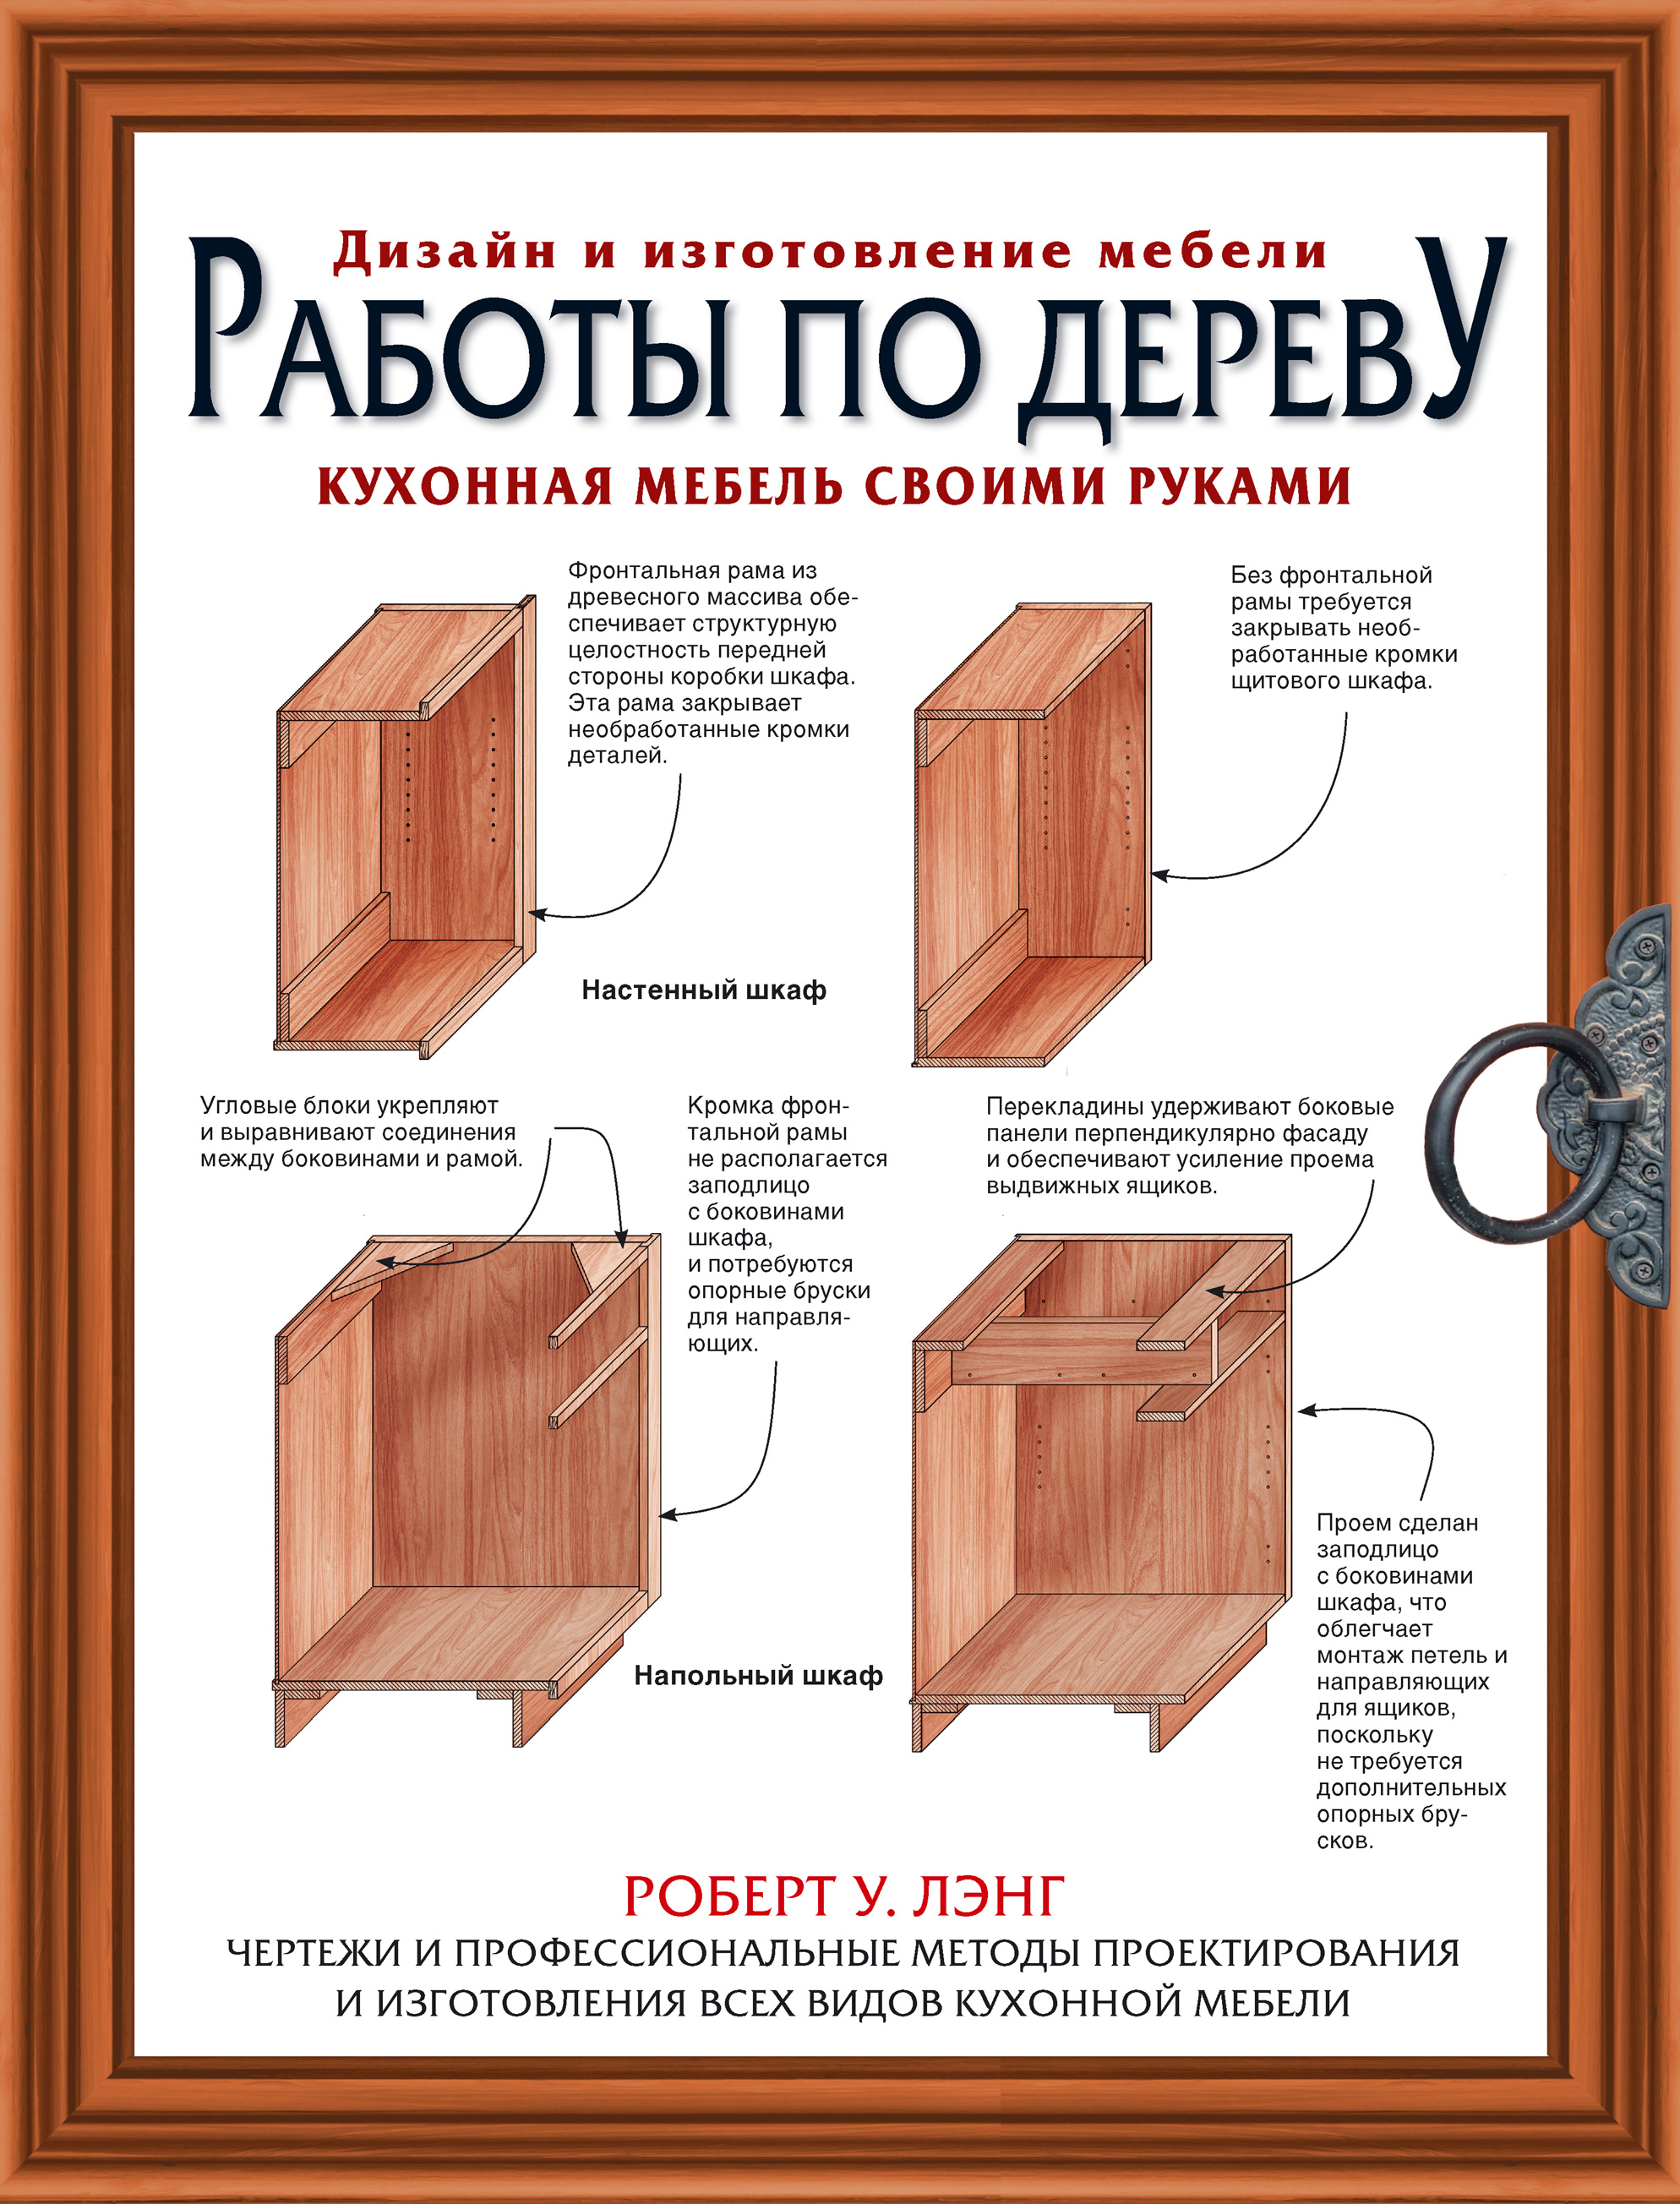 Как организовать бизнес по изготовлению мебели под заказ | luchistii-sudak.ru